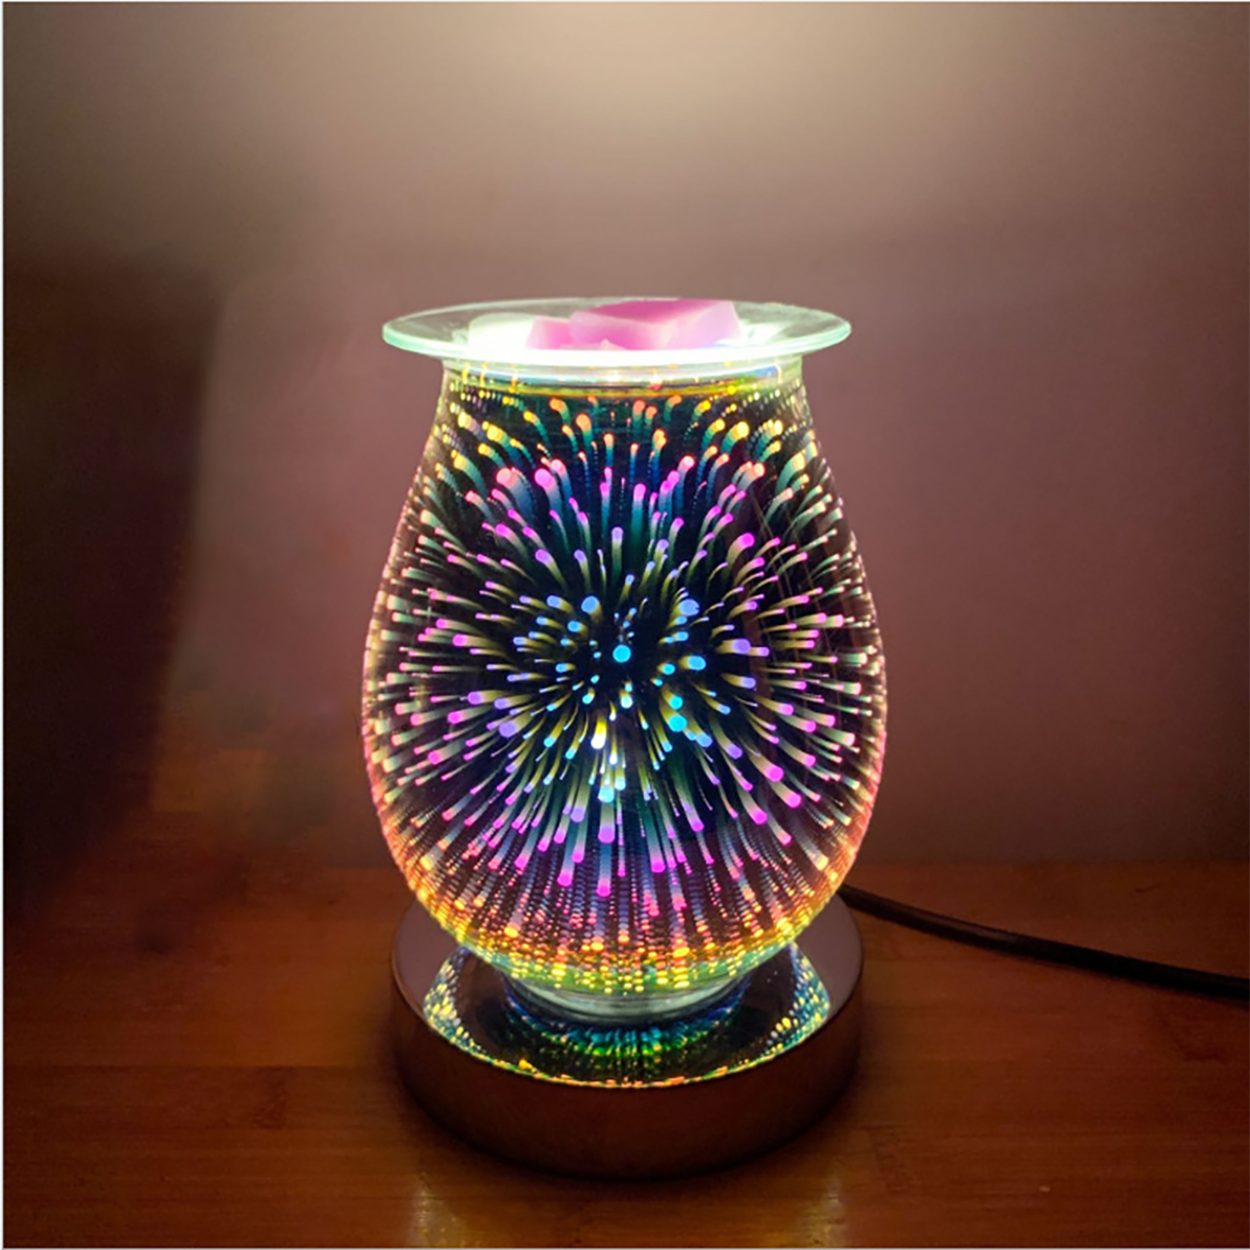 yozhiqu Duftlampe Elektrischer Glaswachsschmelzofen, 3D-Aromalampe mit Touch-Nachtlicht (1 St), Verwenden Sie ätherische Öle oder Wachs,3 Lichter,rauchfrei und sicher